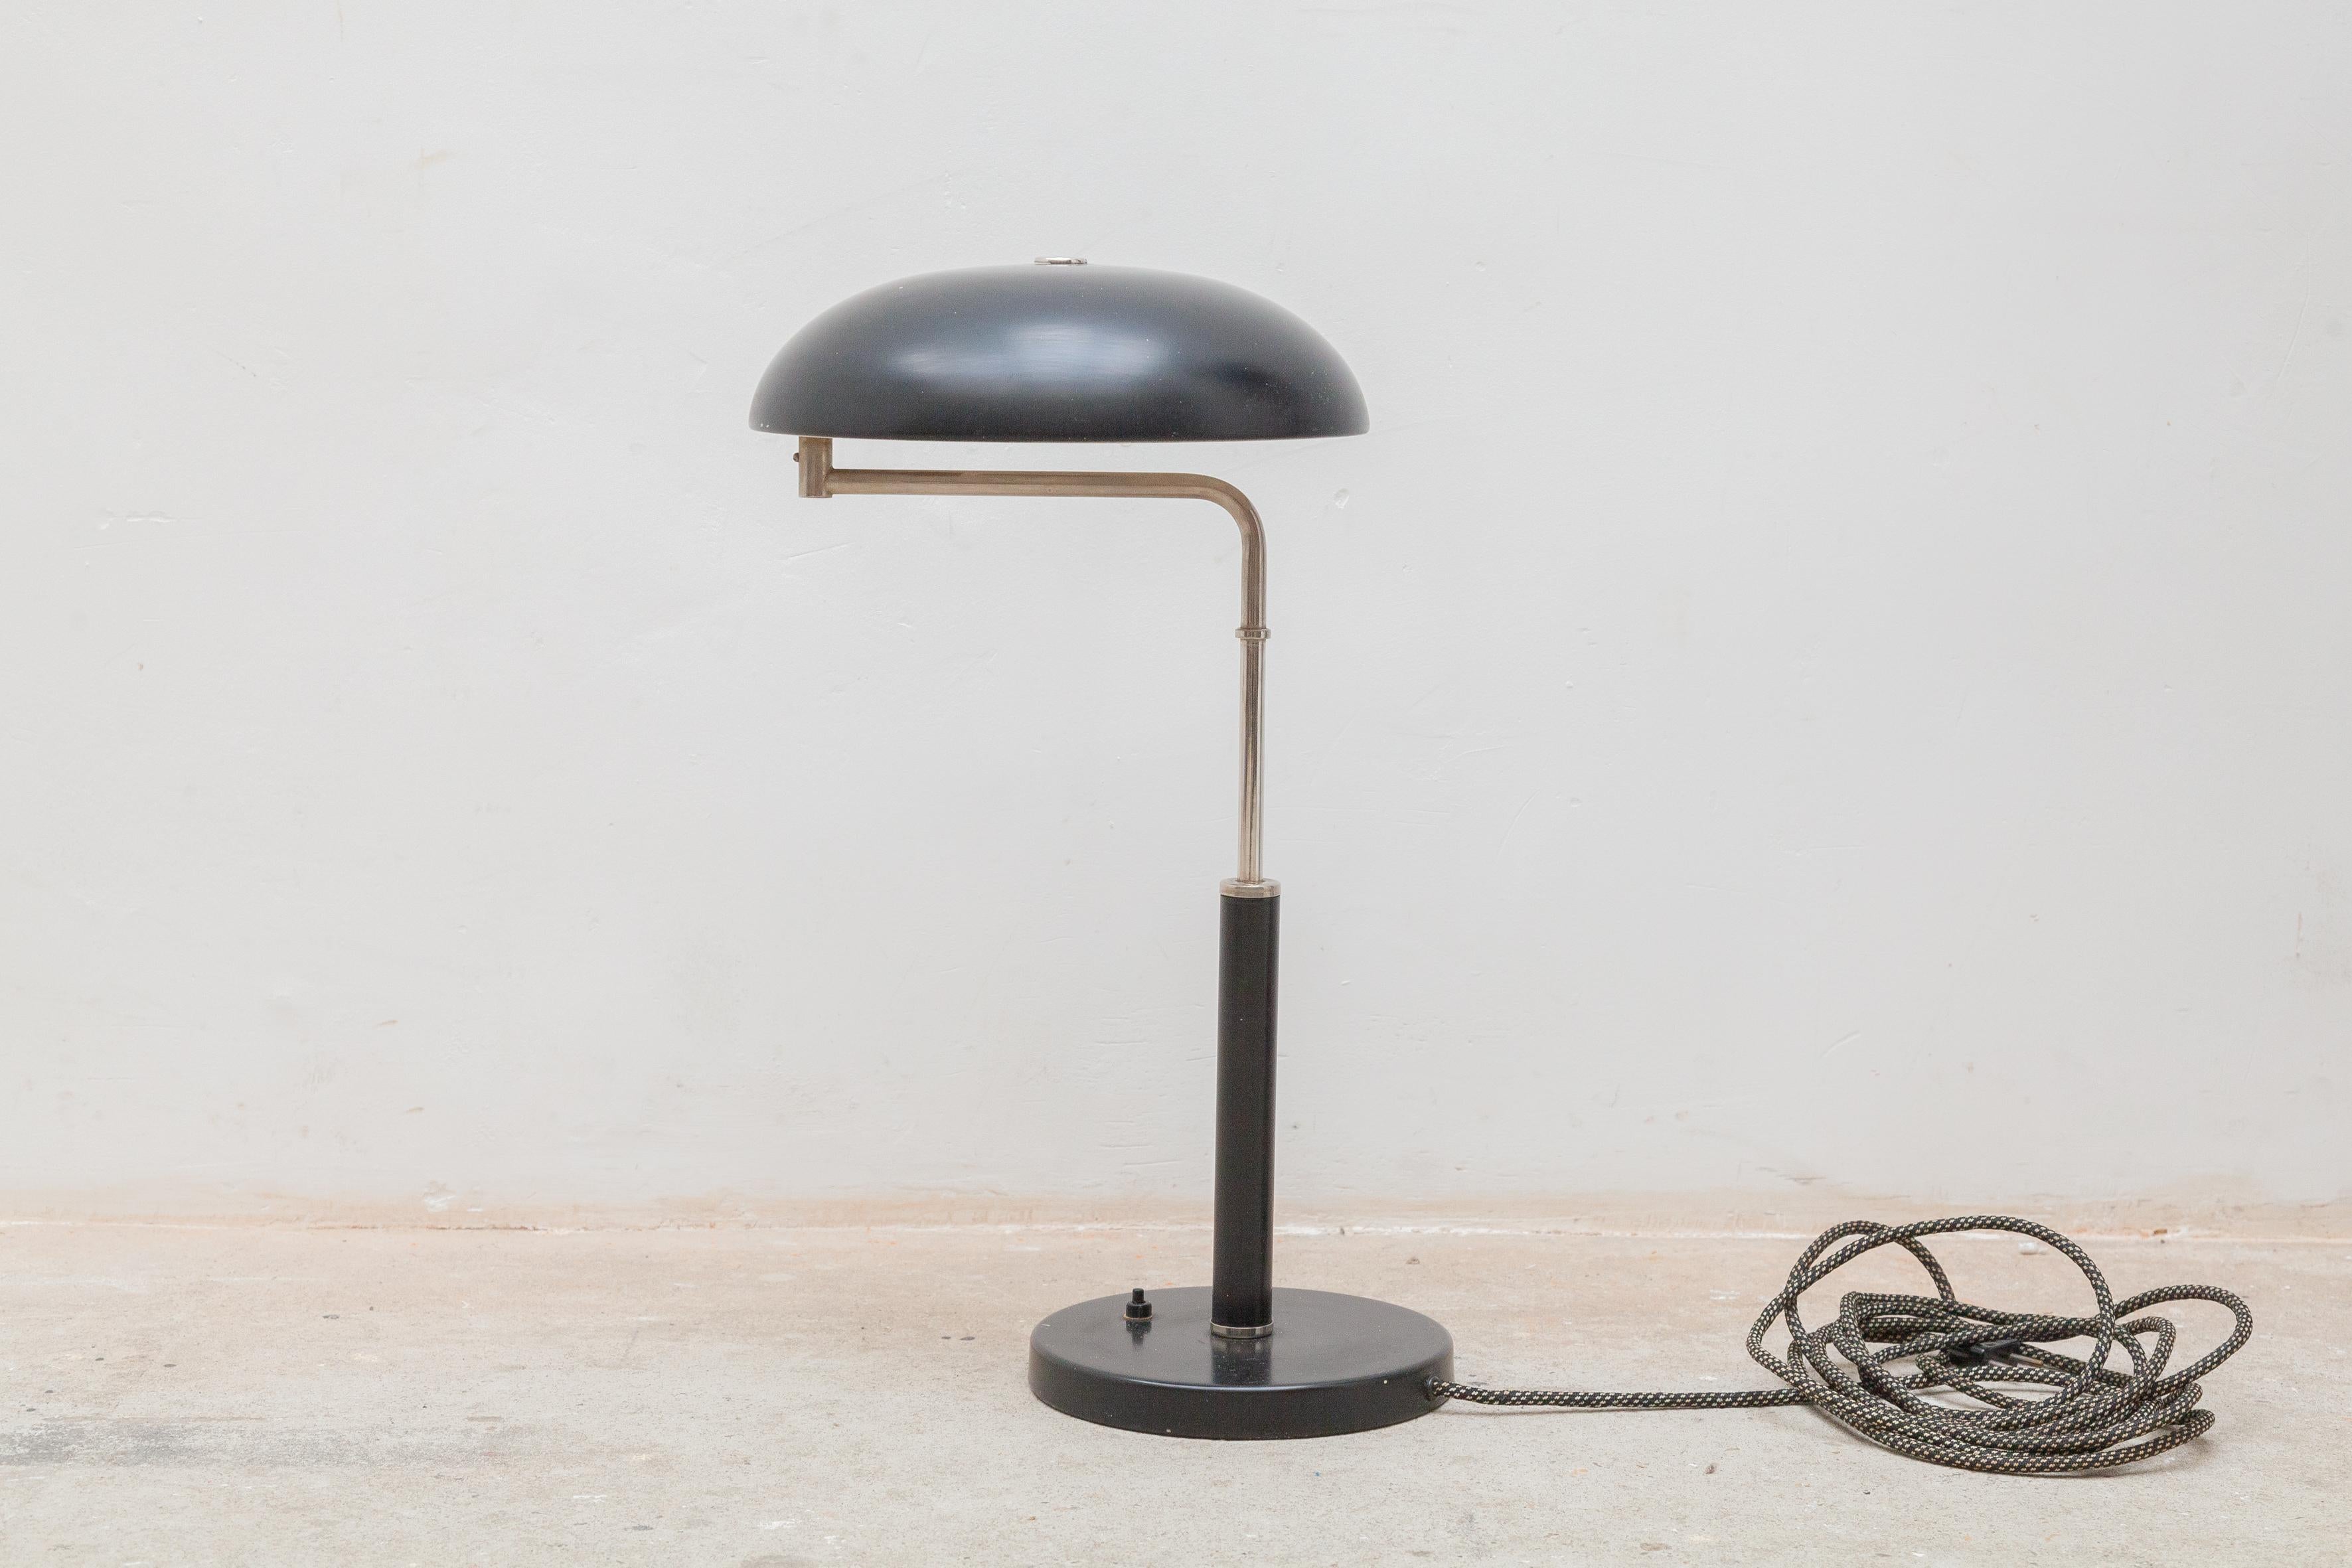 Lampe réglable de bureau/table de style Bauhaus design-classique. Cette lampe de table classique et design possède un bel abat-jour noirci et une base circulaire assortie. Options de réglage multiples : le bras pivote, tout comme l'abat-jour, et la